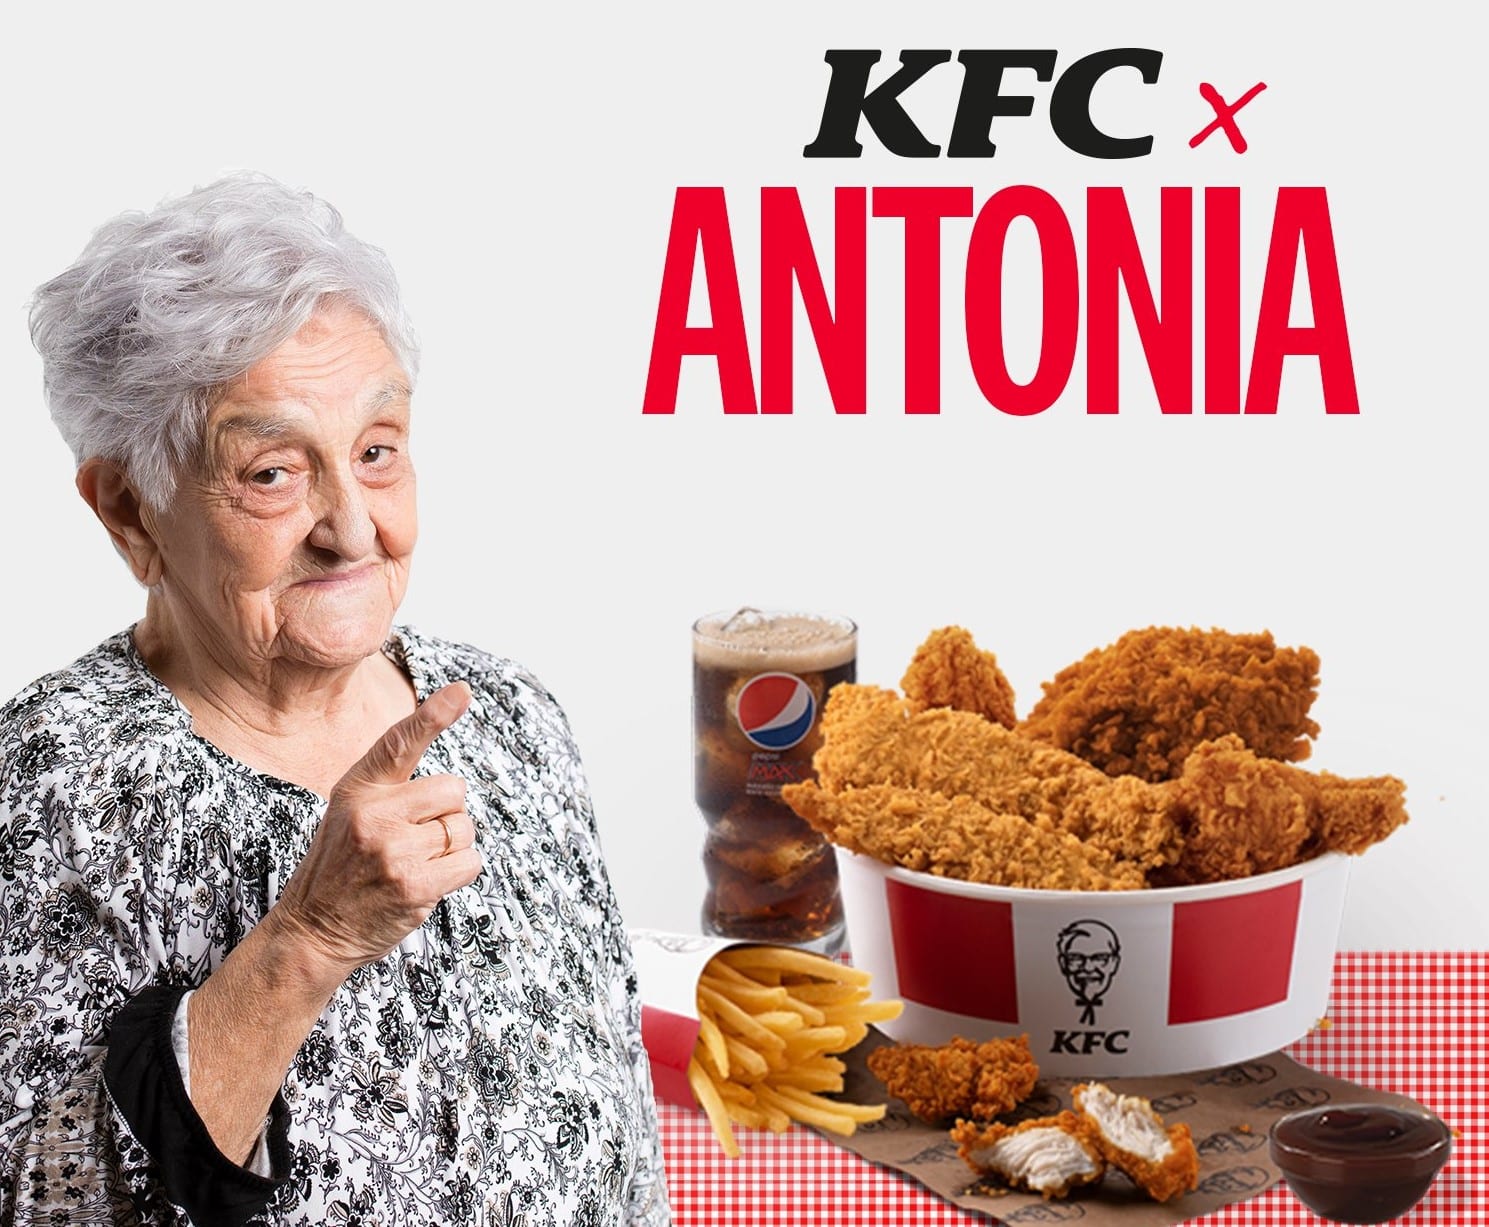 Anciana en un cartel publicitario de KFC con un cubo de pollo frito al lado